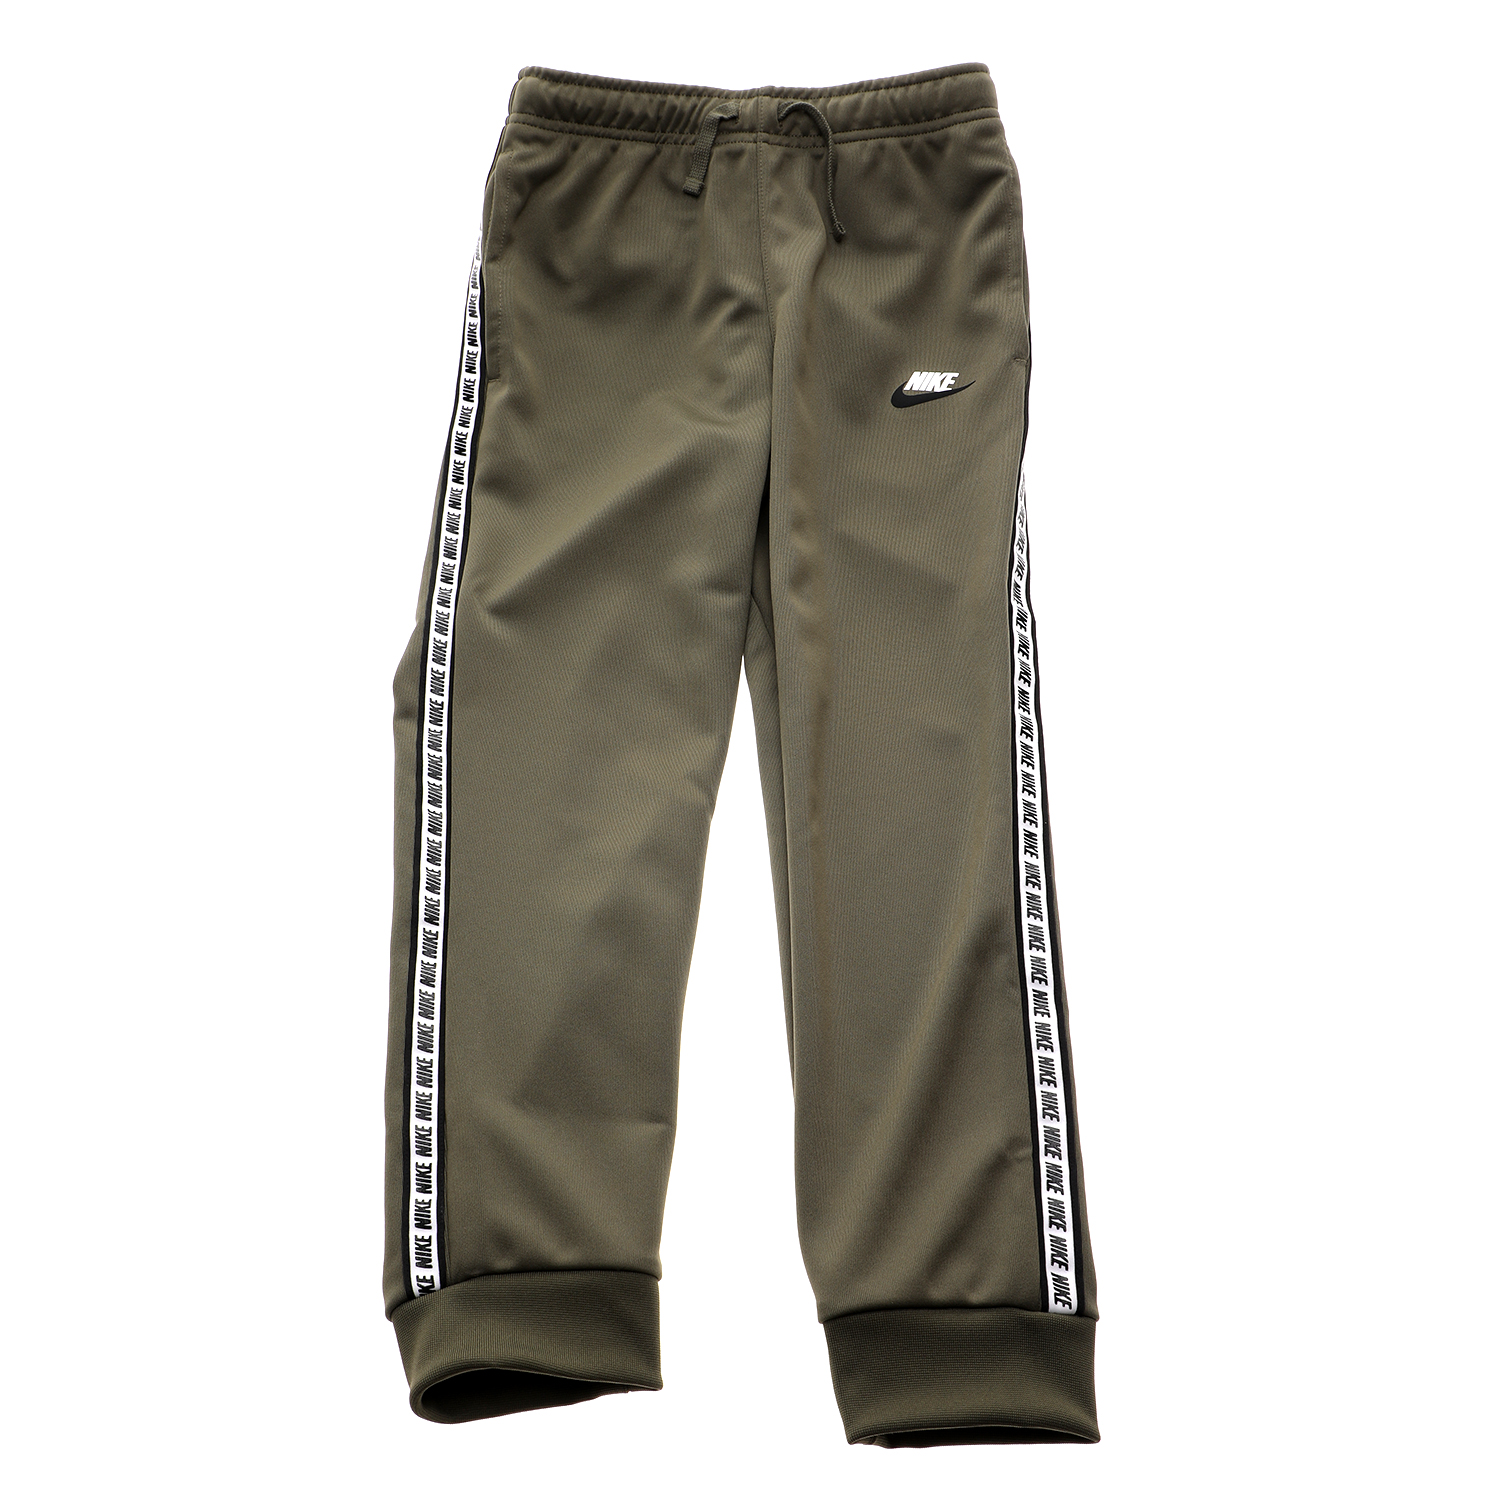 Παιδικά/Boys/Ρούχα/Αθλητικά NIKE - Παιδικό παντελόνι φόρμας NIKE NSW REPEAT PANT POLY χακί